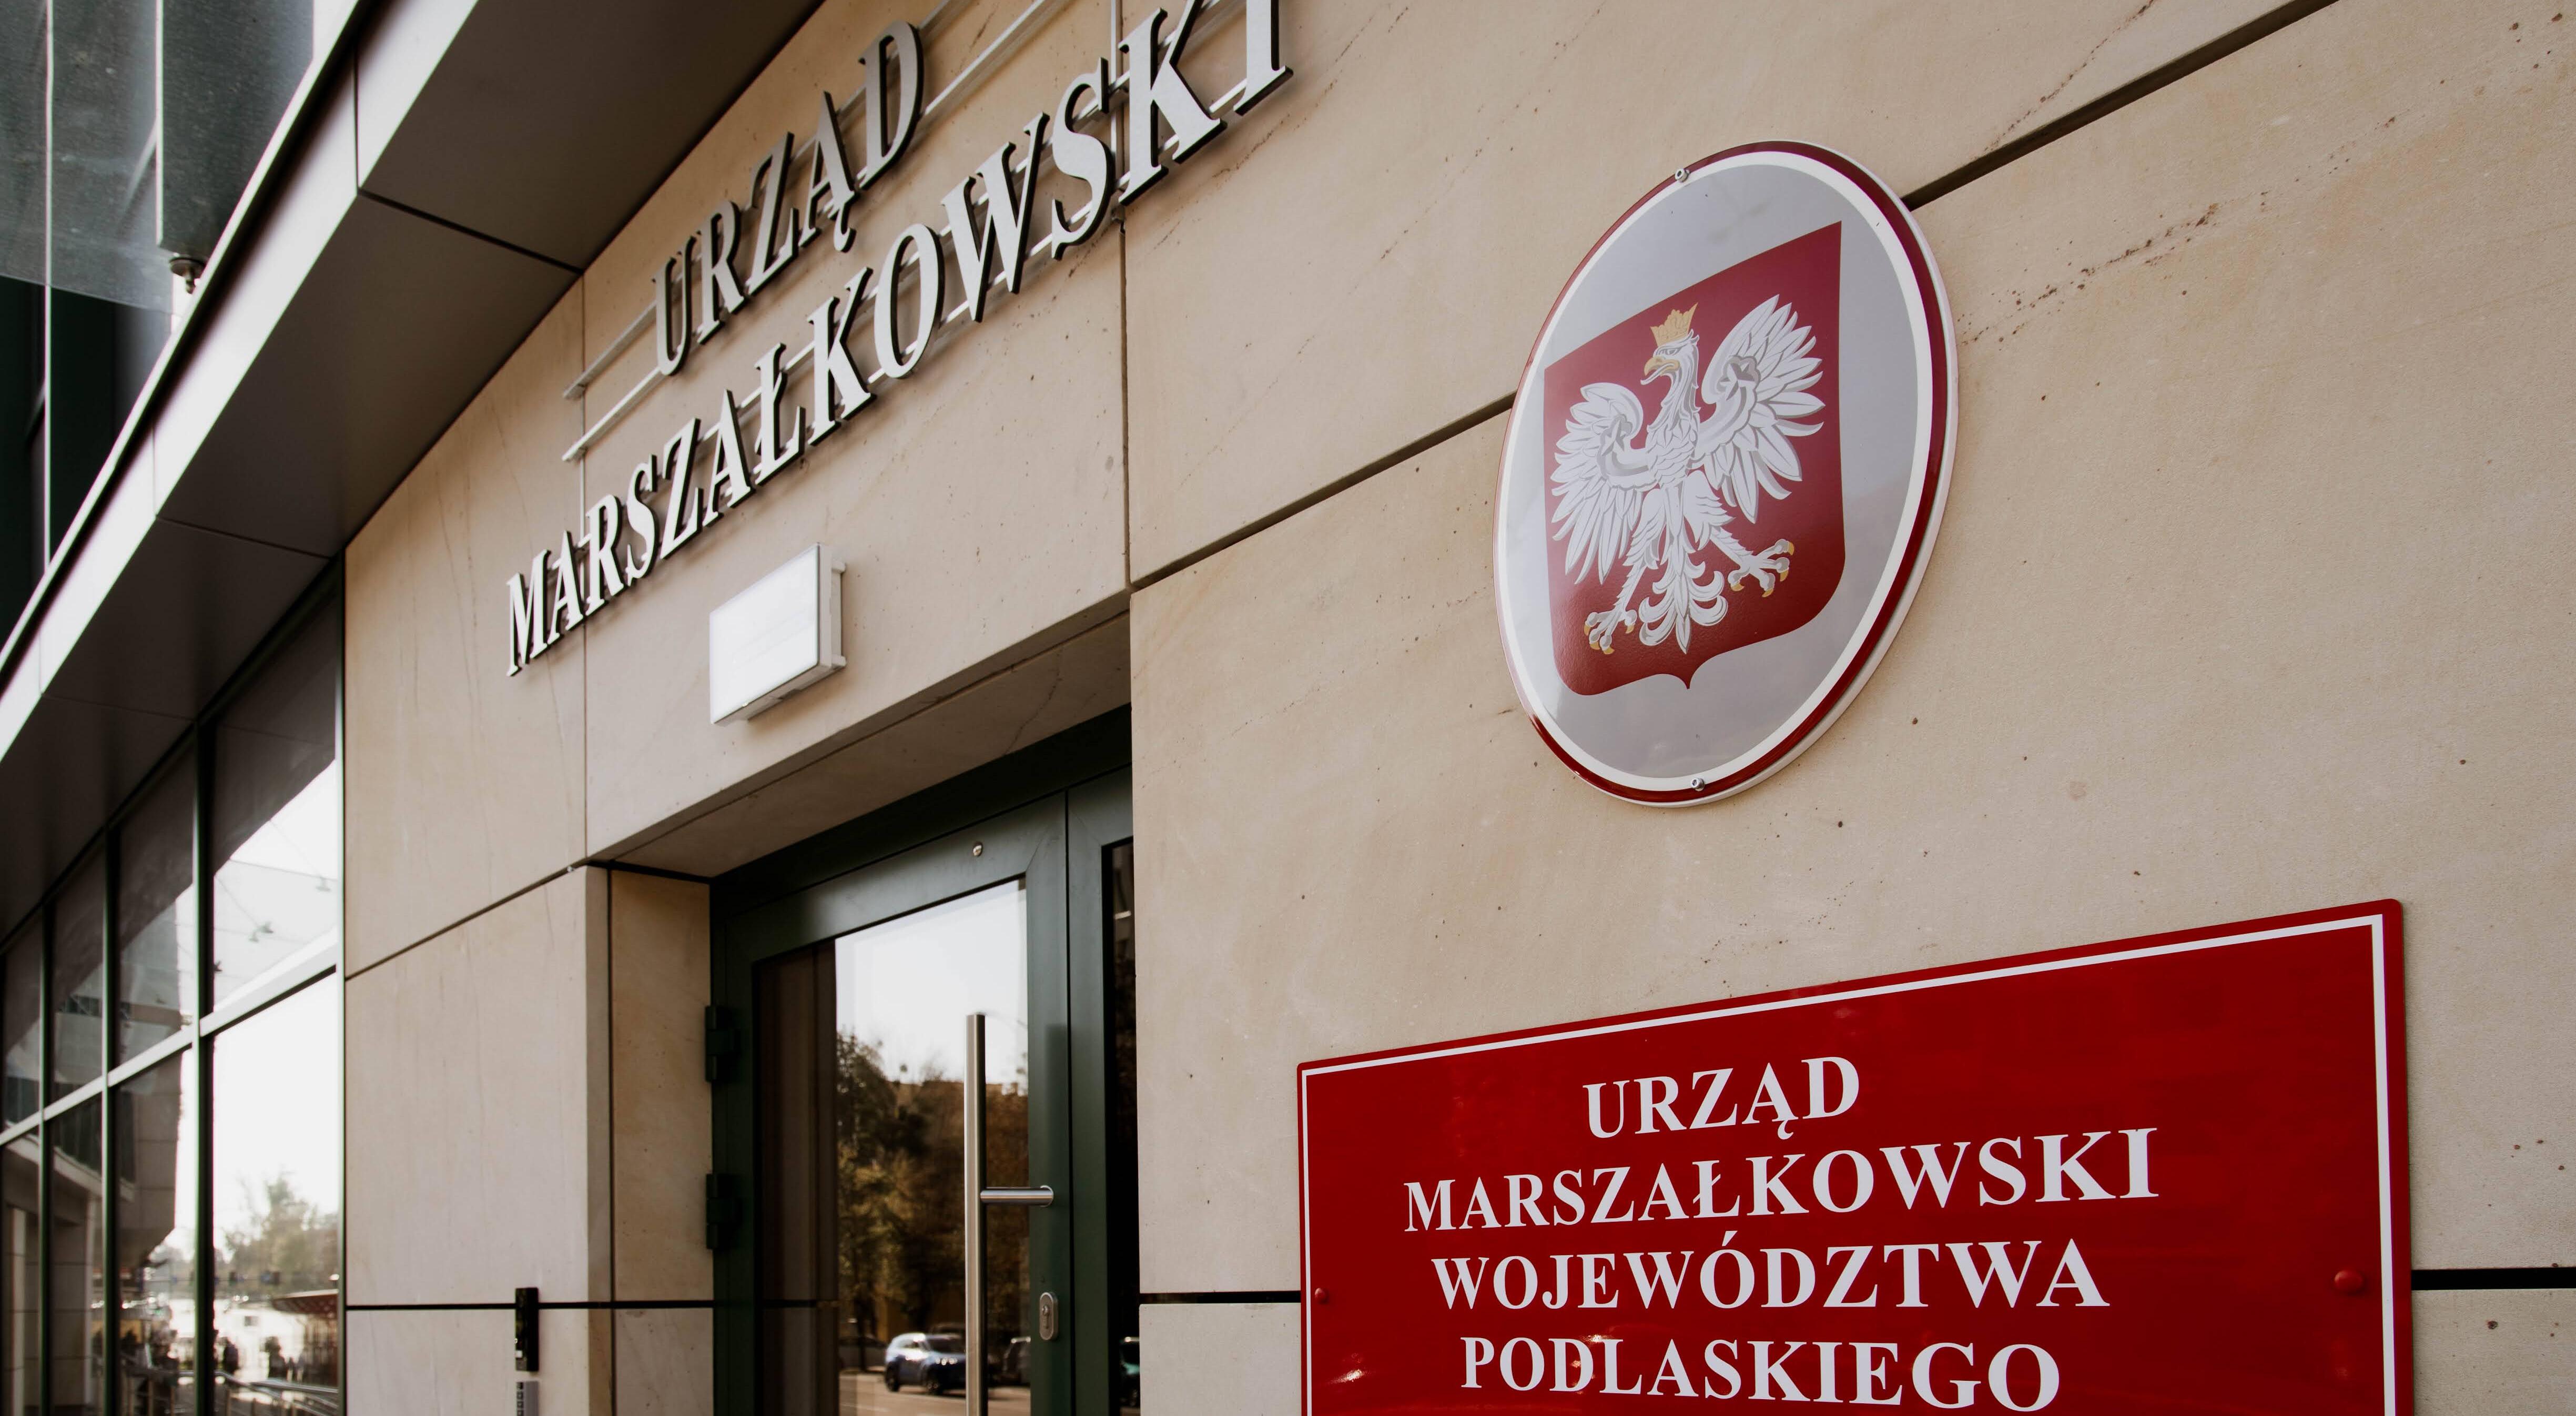 Wejście do urzędu marszałkowskiego